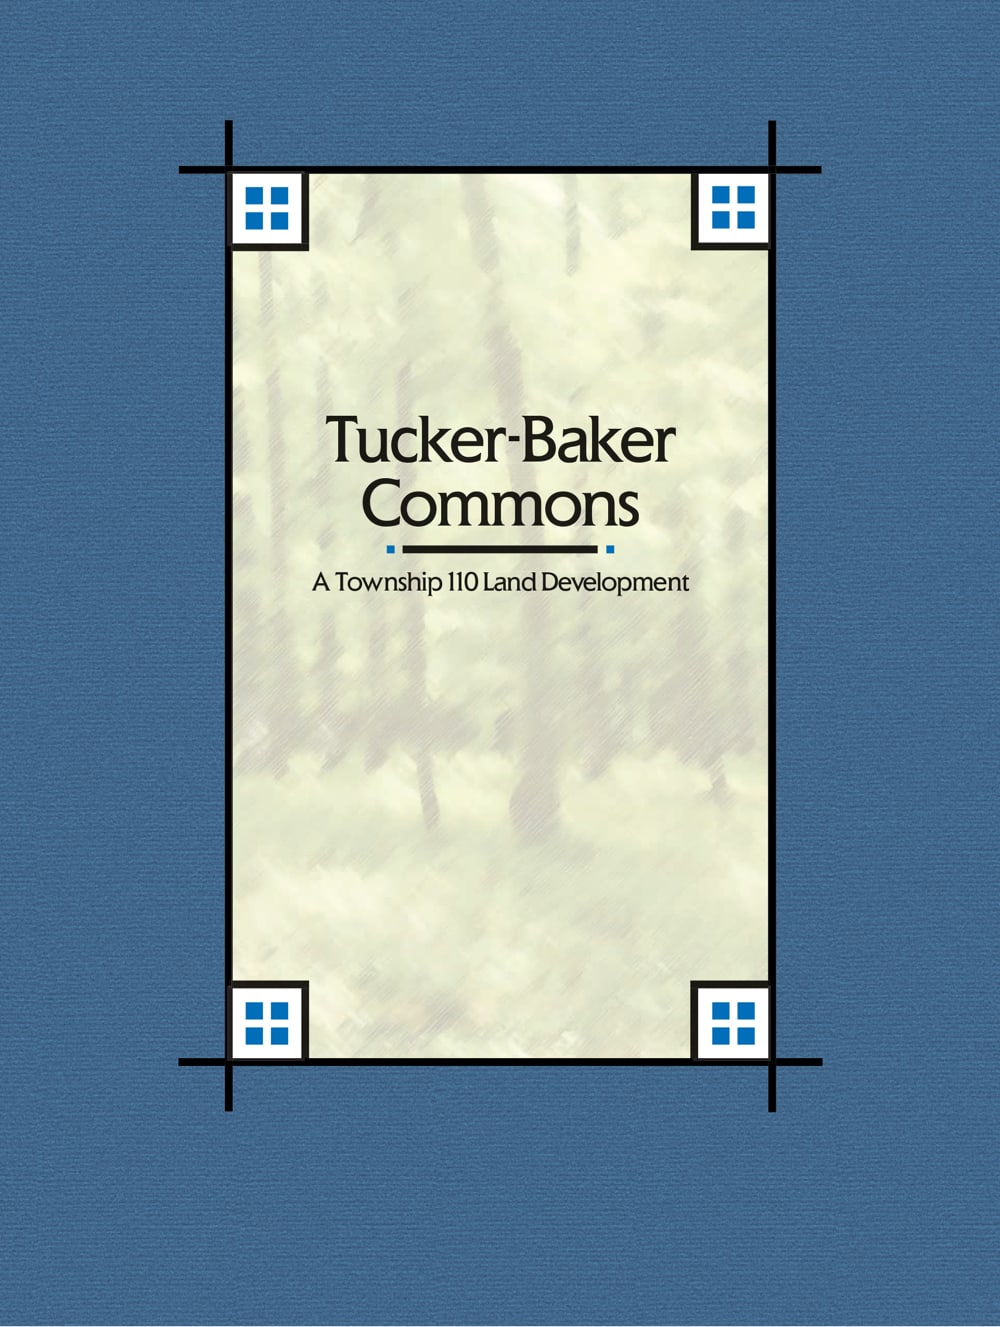 Tucker Baker Promotional Packet